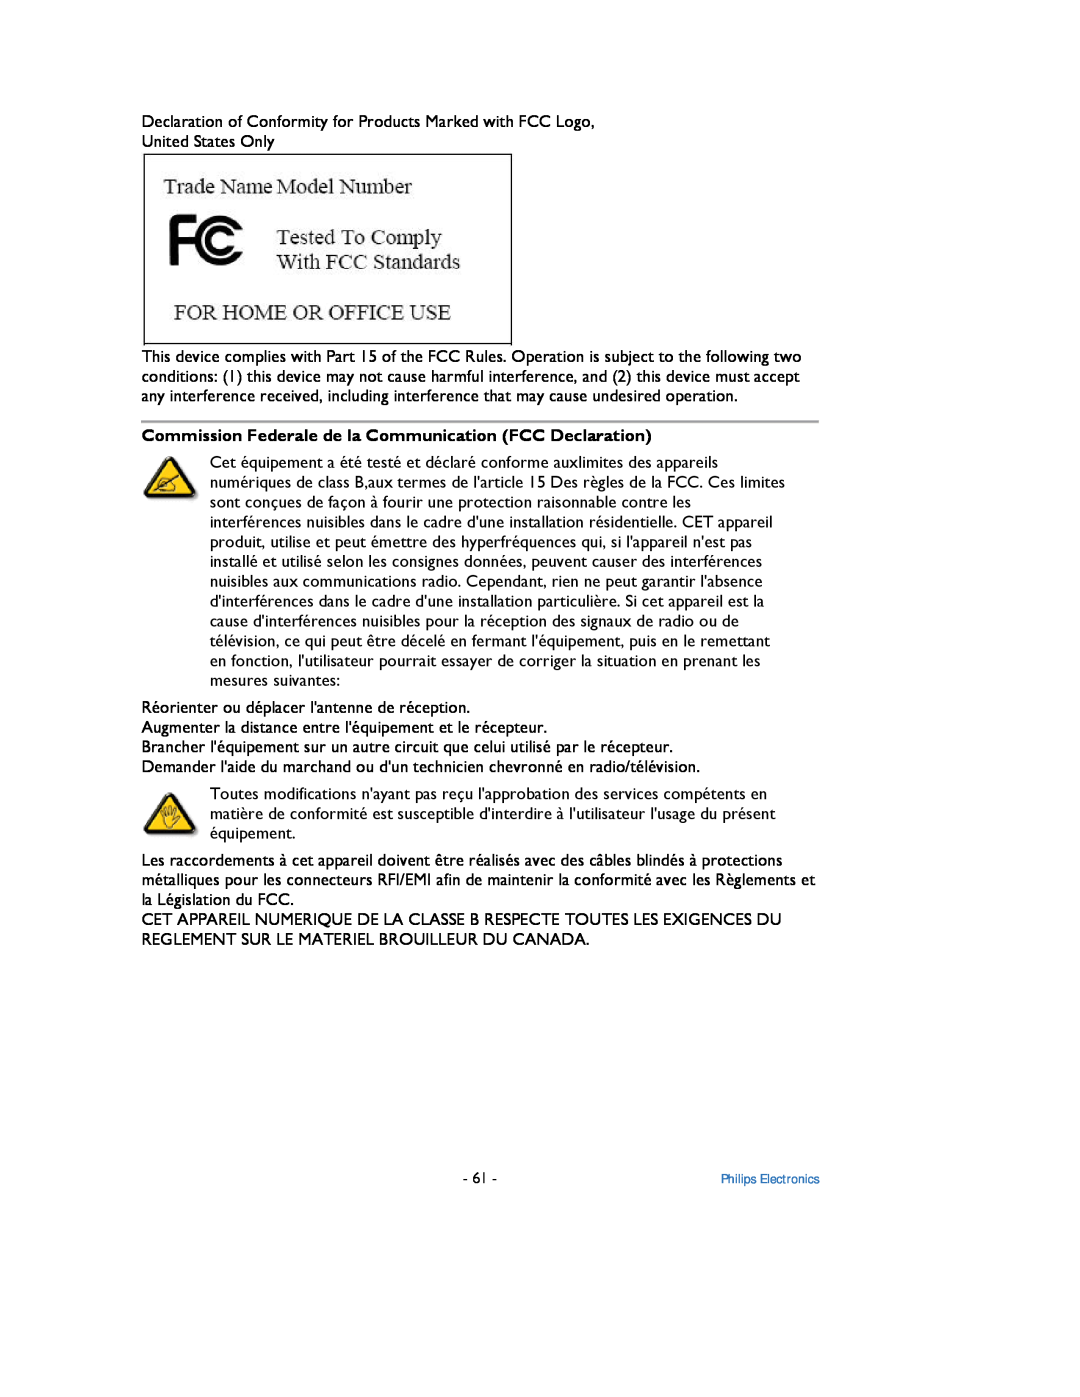 Philips 9FF2 user manual Commission Federale de la Communication FCC Declaration 